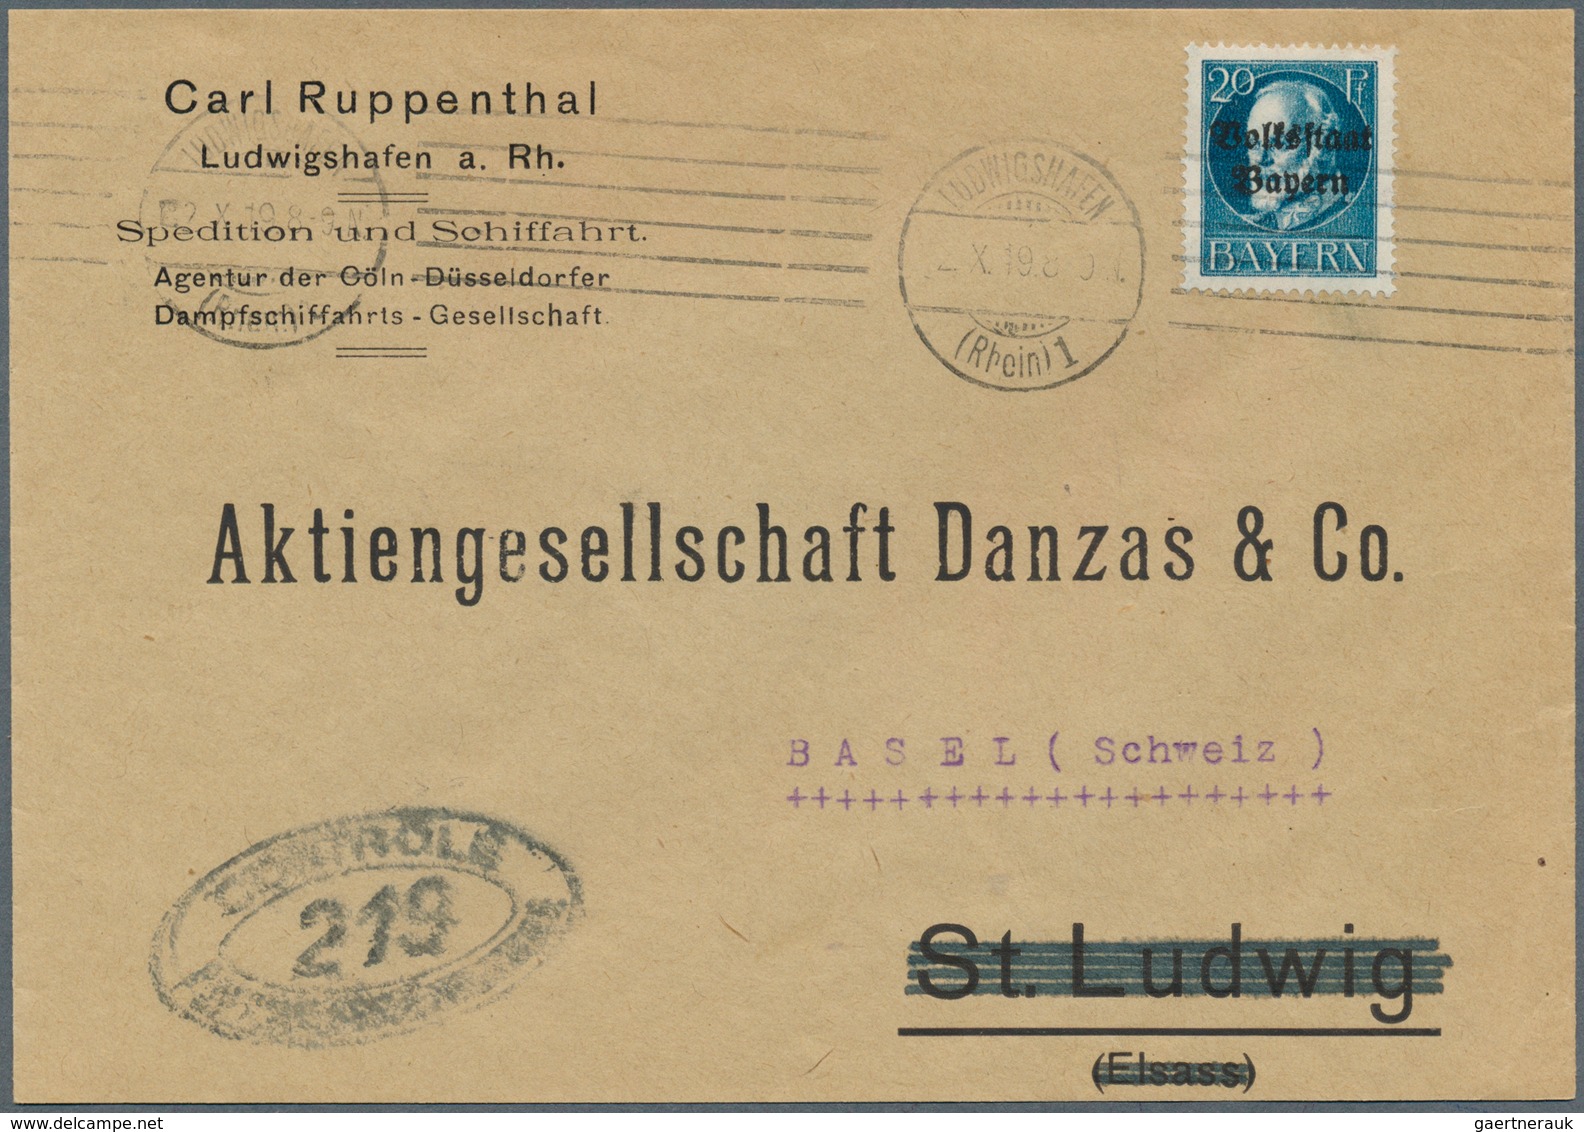 Zensurpost: 1919, Fünf Belege aus der Pfalz, alle noch mit bayerischer Frankatur und jeweils mit fra